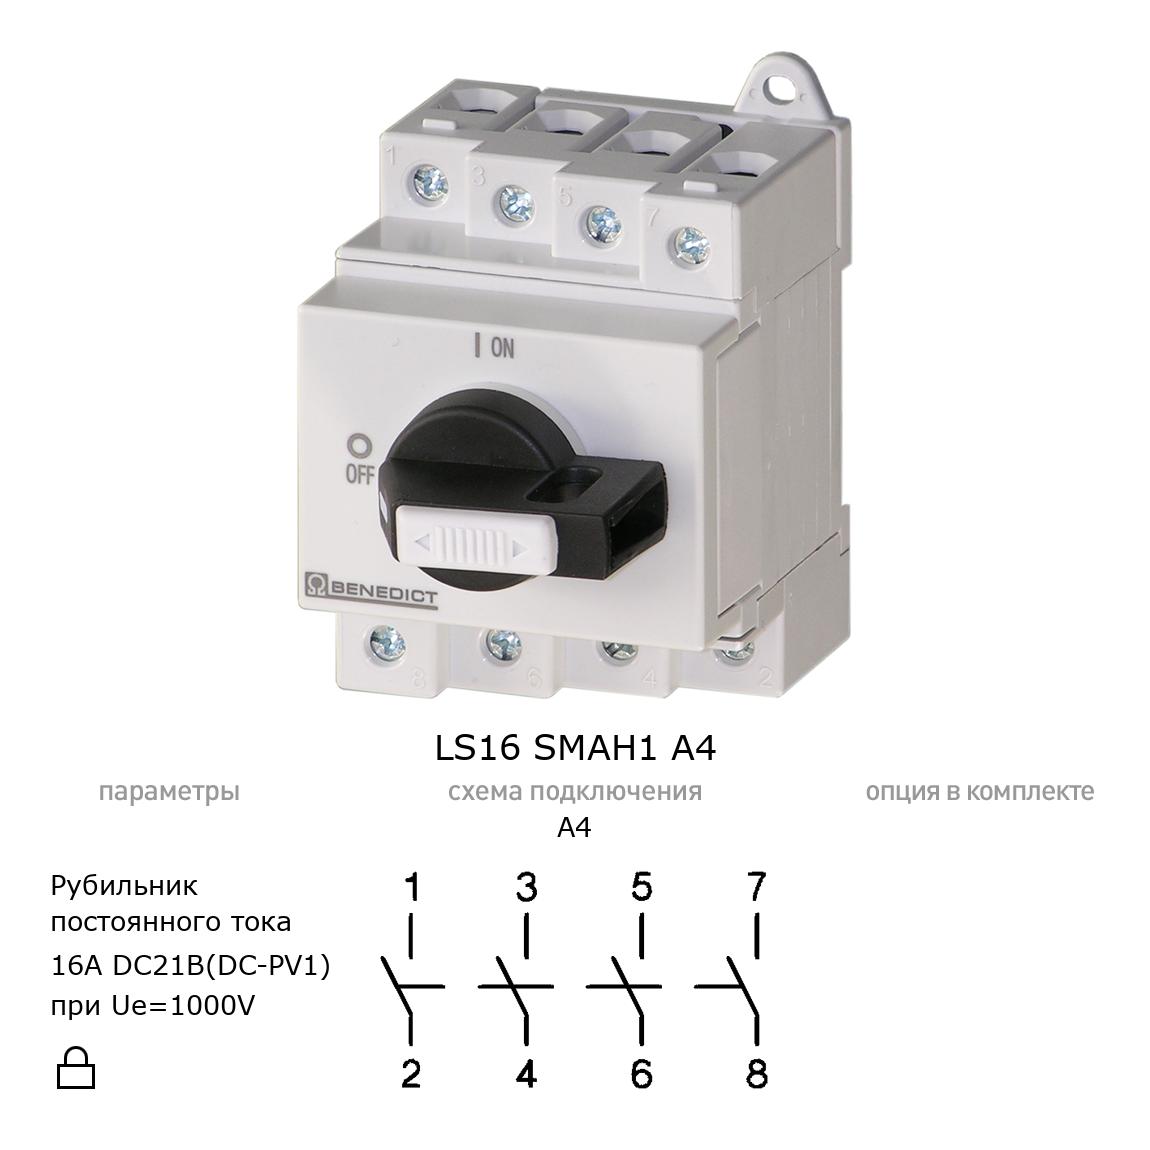 Выключатель нагрузки / рубильник для постоянного тока (DC) LS16 SMAH1 A4 BENEDICT